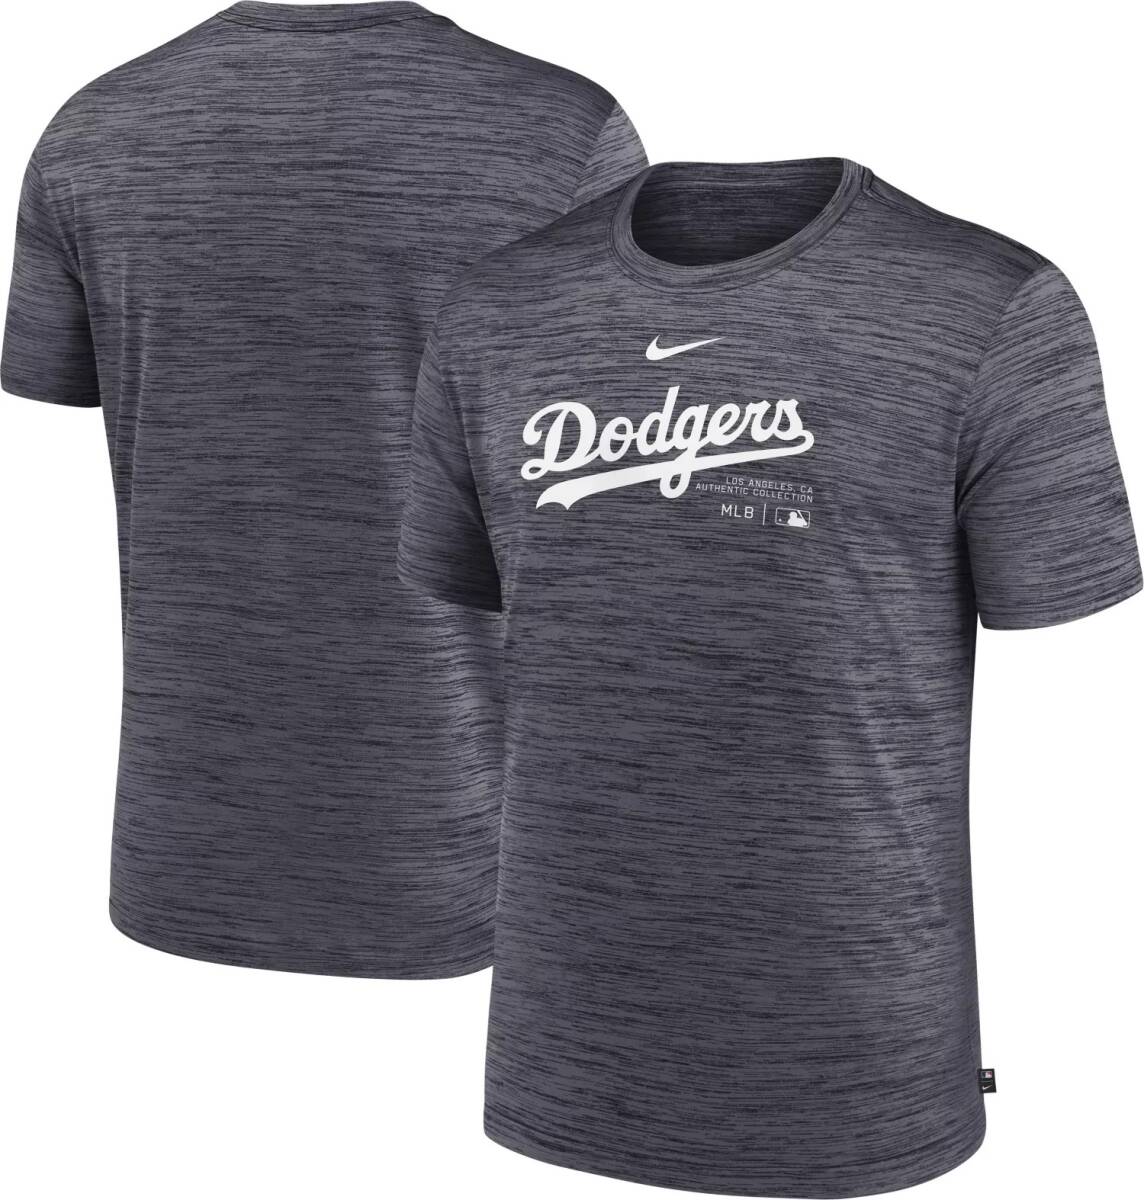 【USサイズ 2XL 選手使用と同じモデル】MLB ロサンゼルス ドジャース Los Angeles Dodgers Authentic Collection Velocity Tシャツ グレー